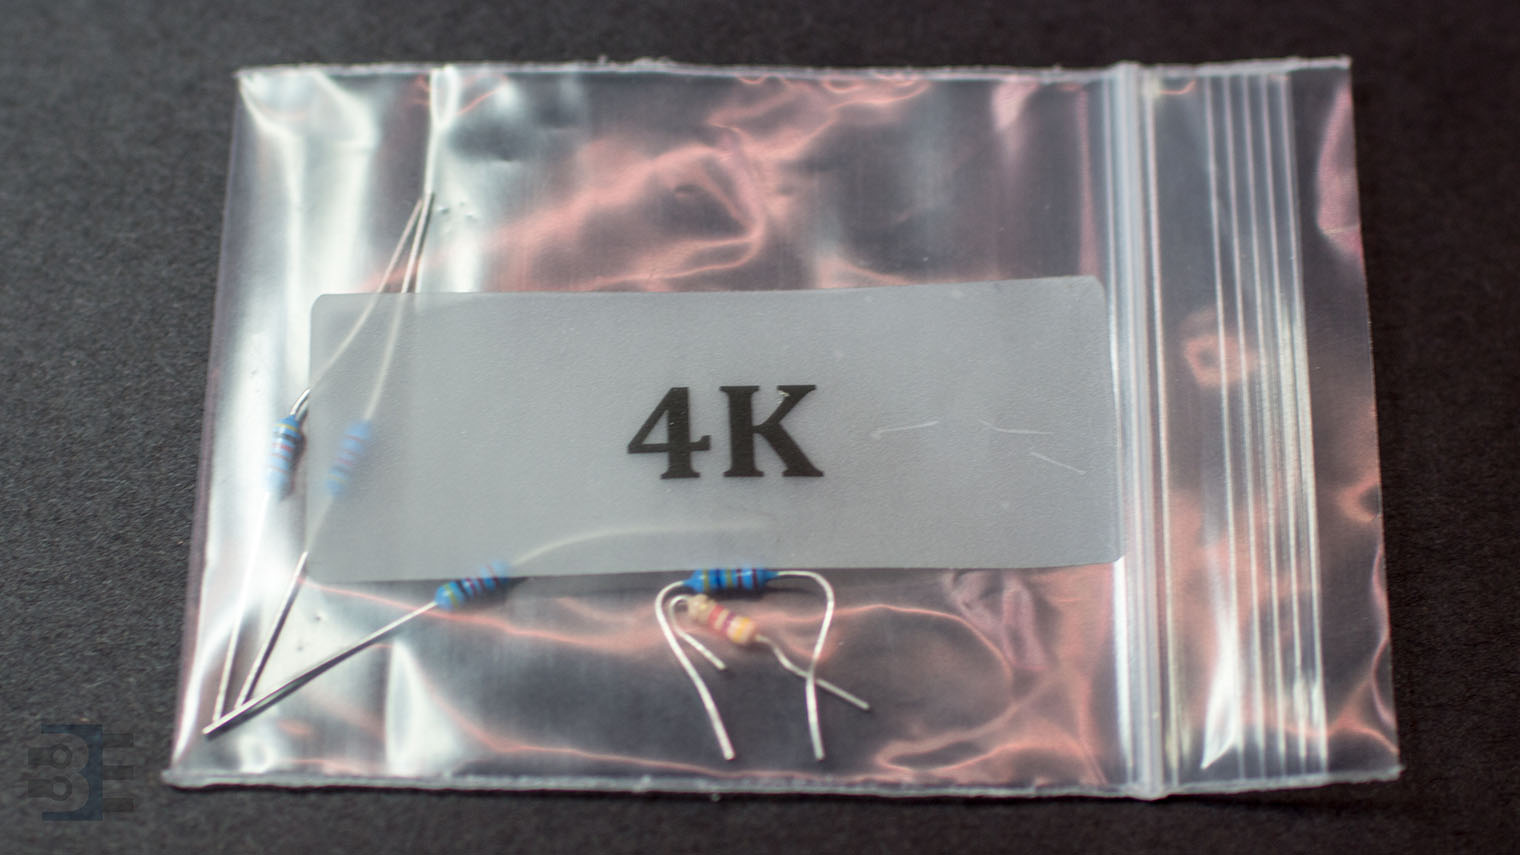 4k resistor packet